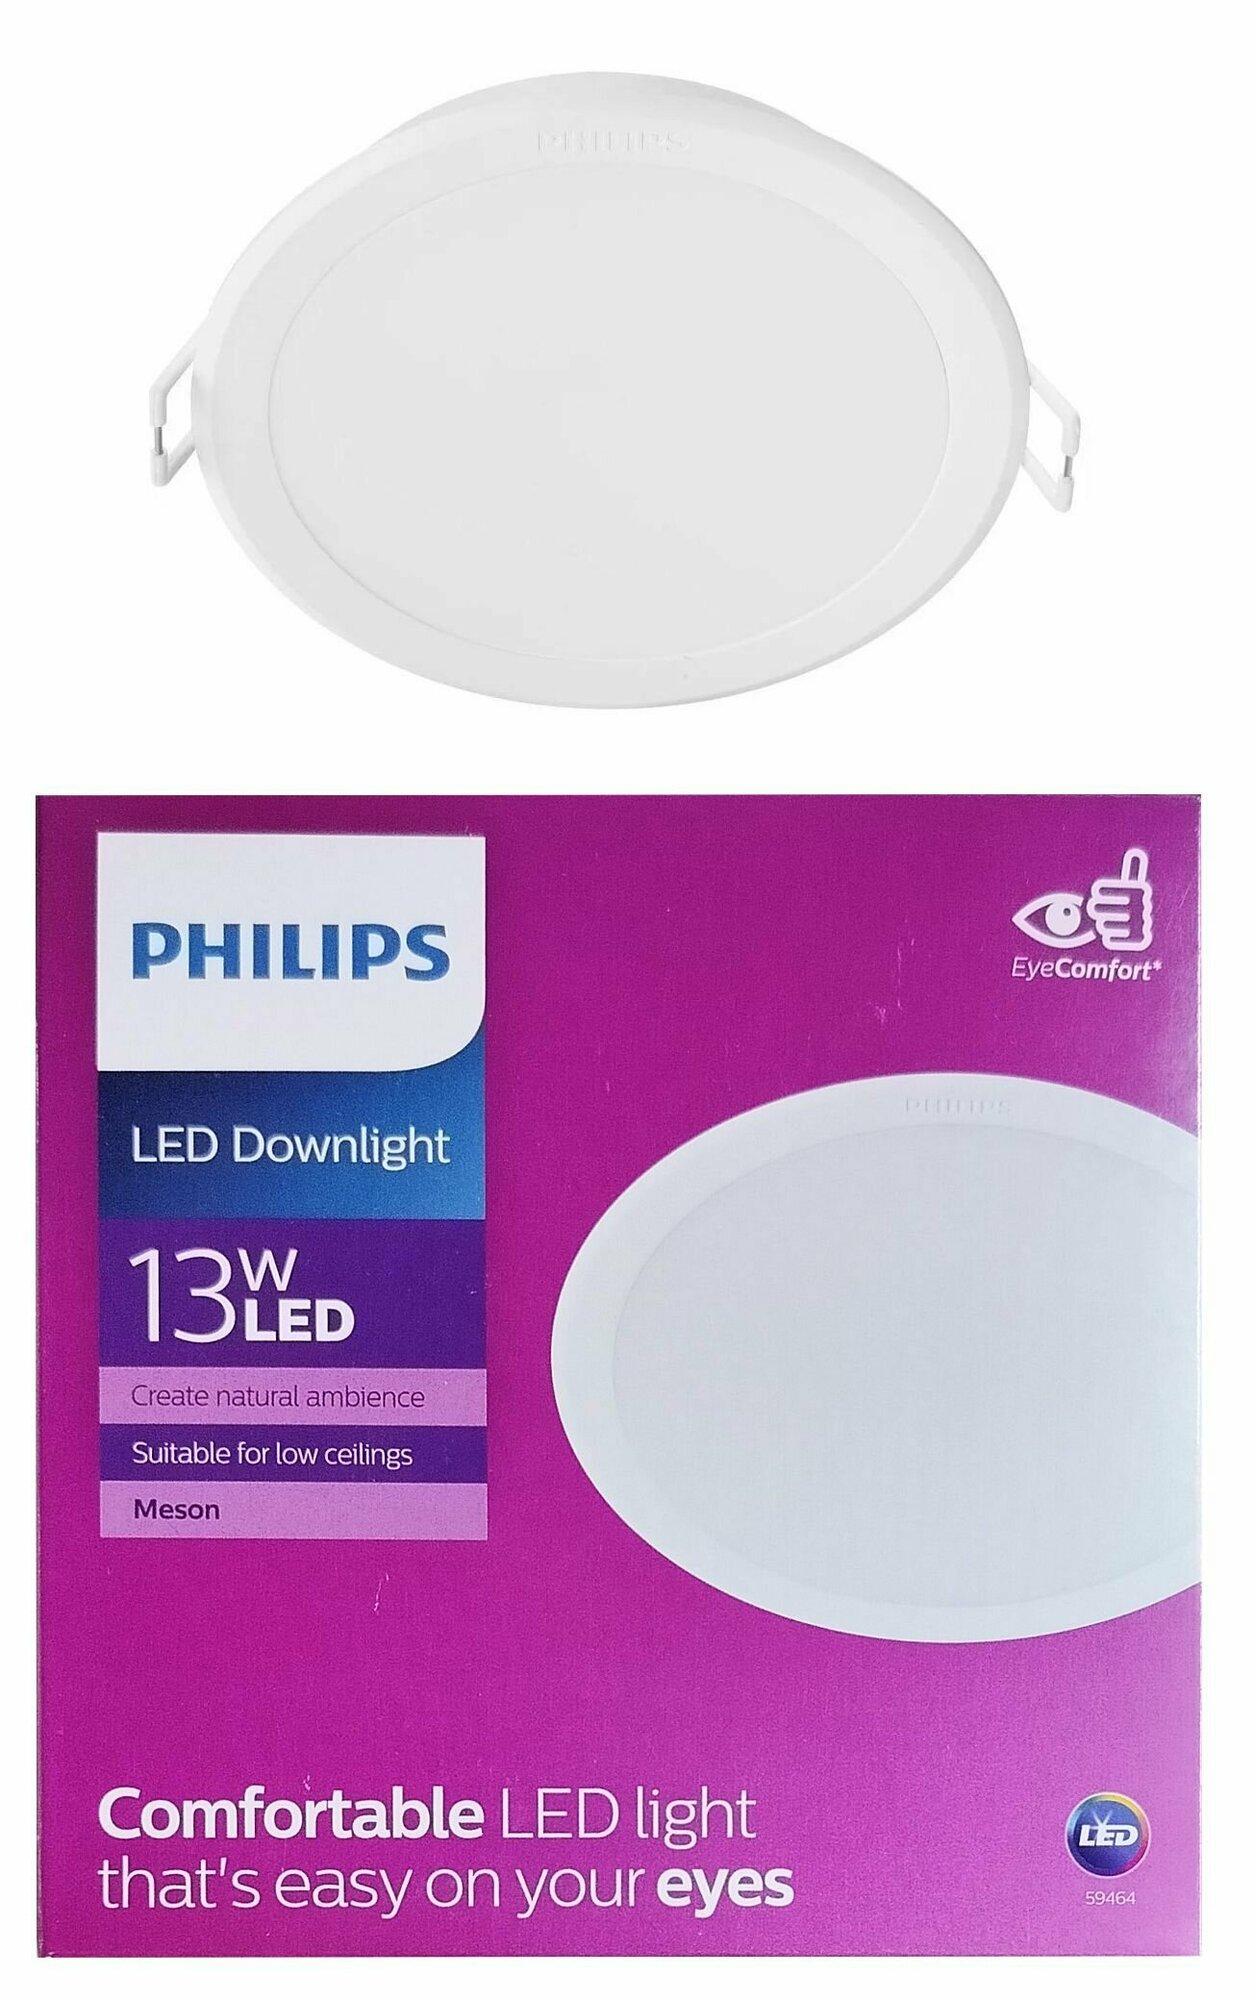 Встраиваемый светильник Philips MESON 13W/4000K D=125mm (d140x47mm) Белый 960lm, уп. 1шт